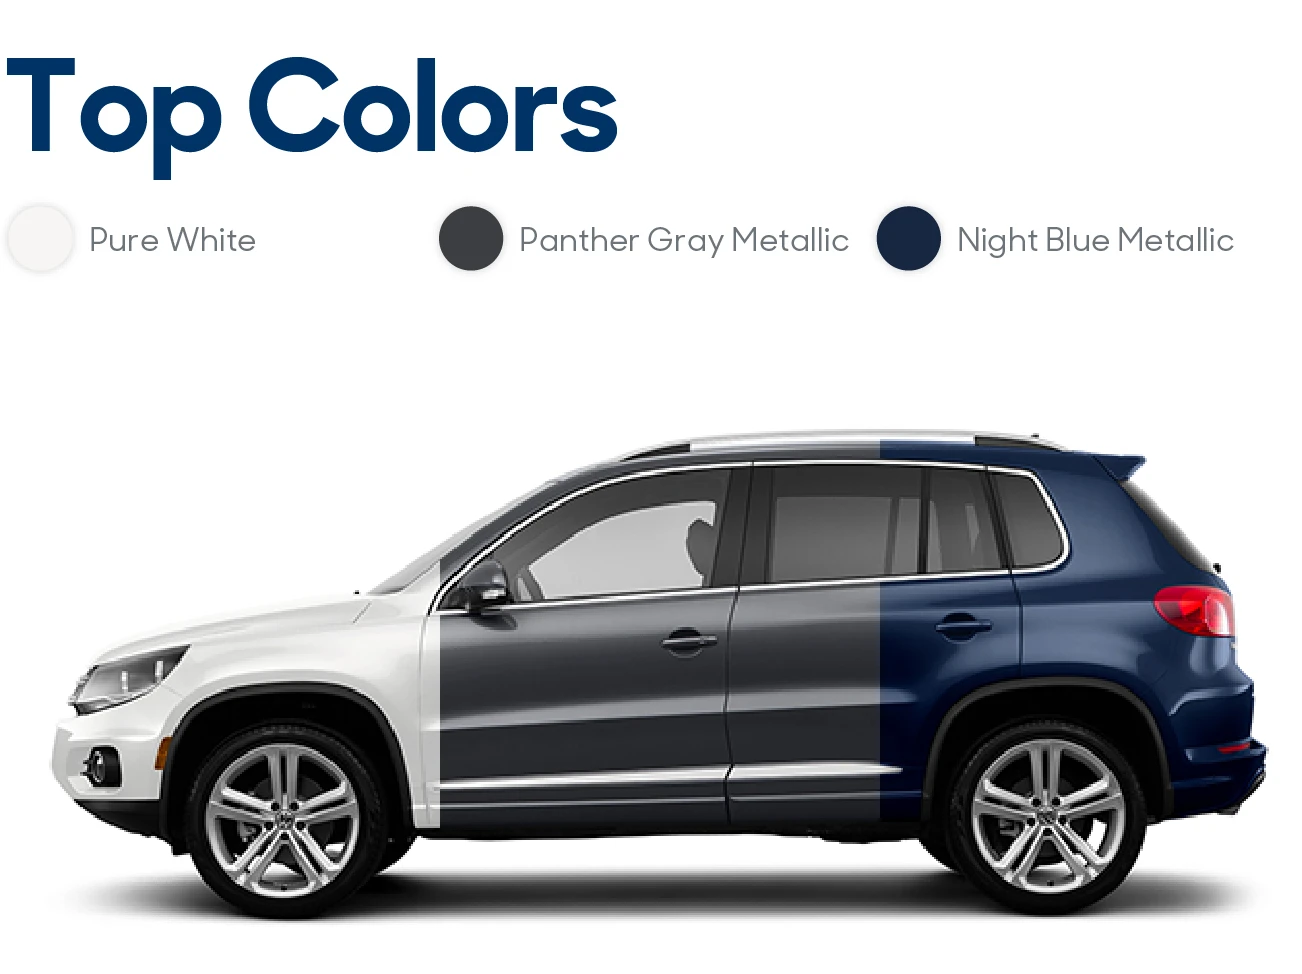 2016 Volkswagen Tiguan Review: Top Colors | CarMax